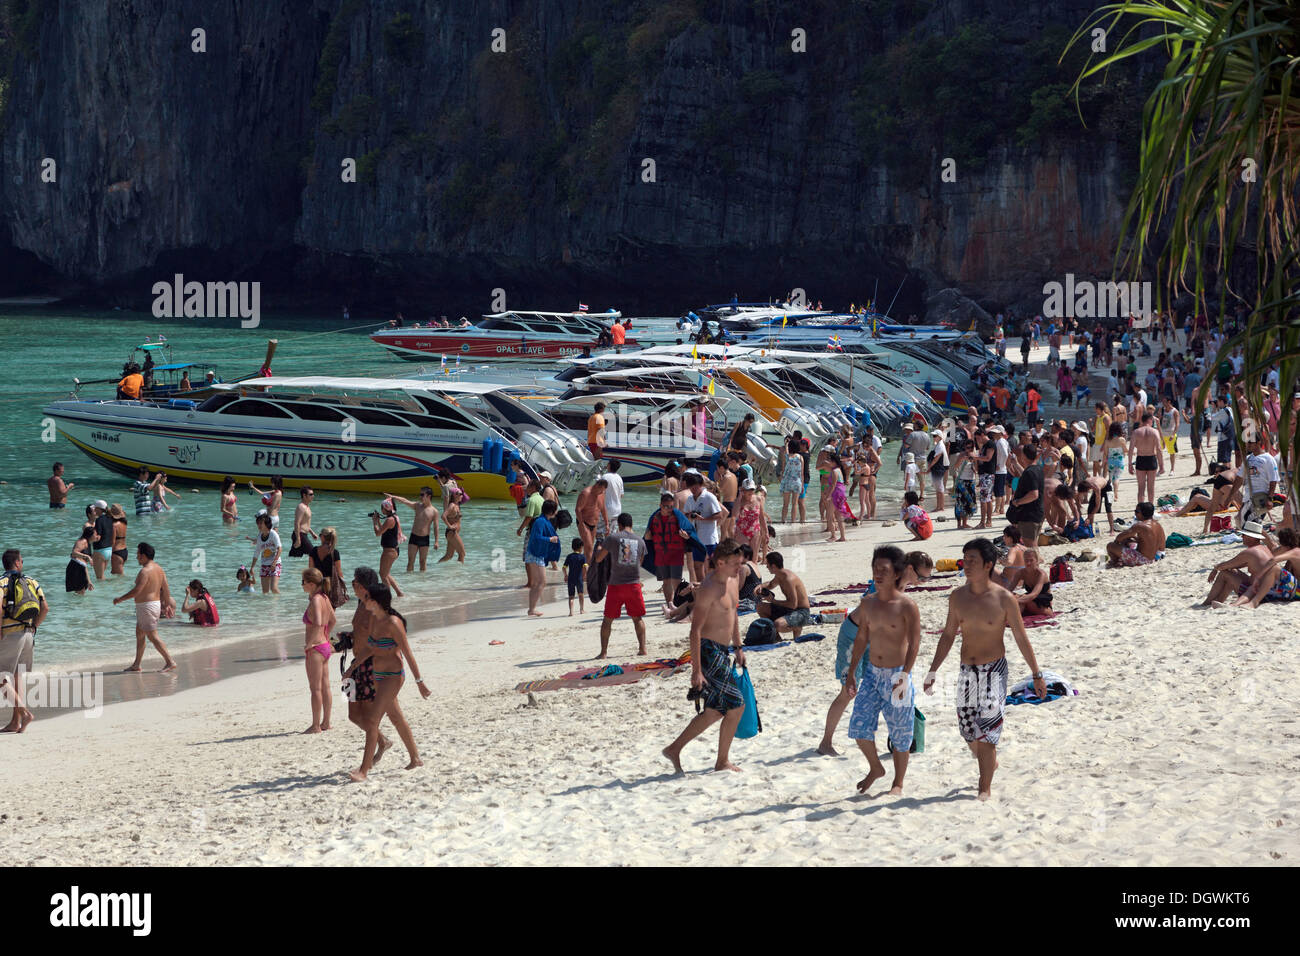 Speedboats and mass tourism on the sandy beach of Maya Beach, Ko Phi Phi Island, Phuket, Thailand, Asia Stock Photo